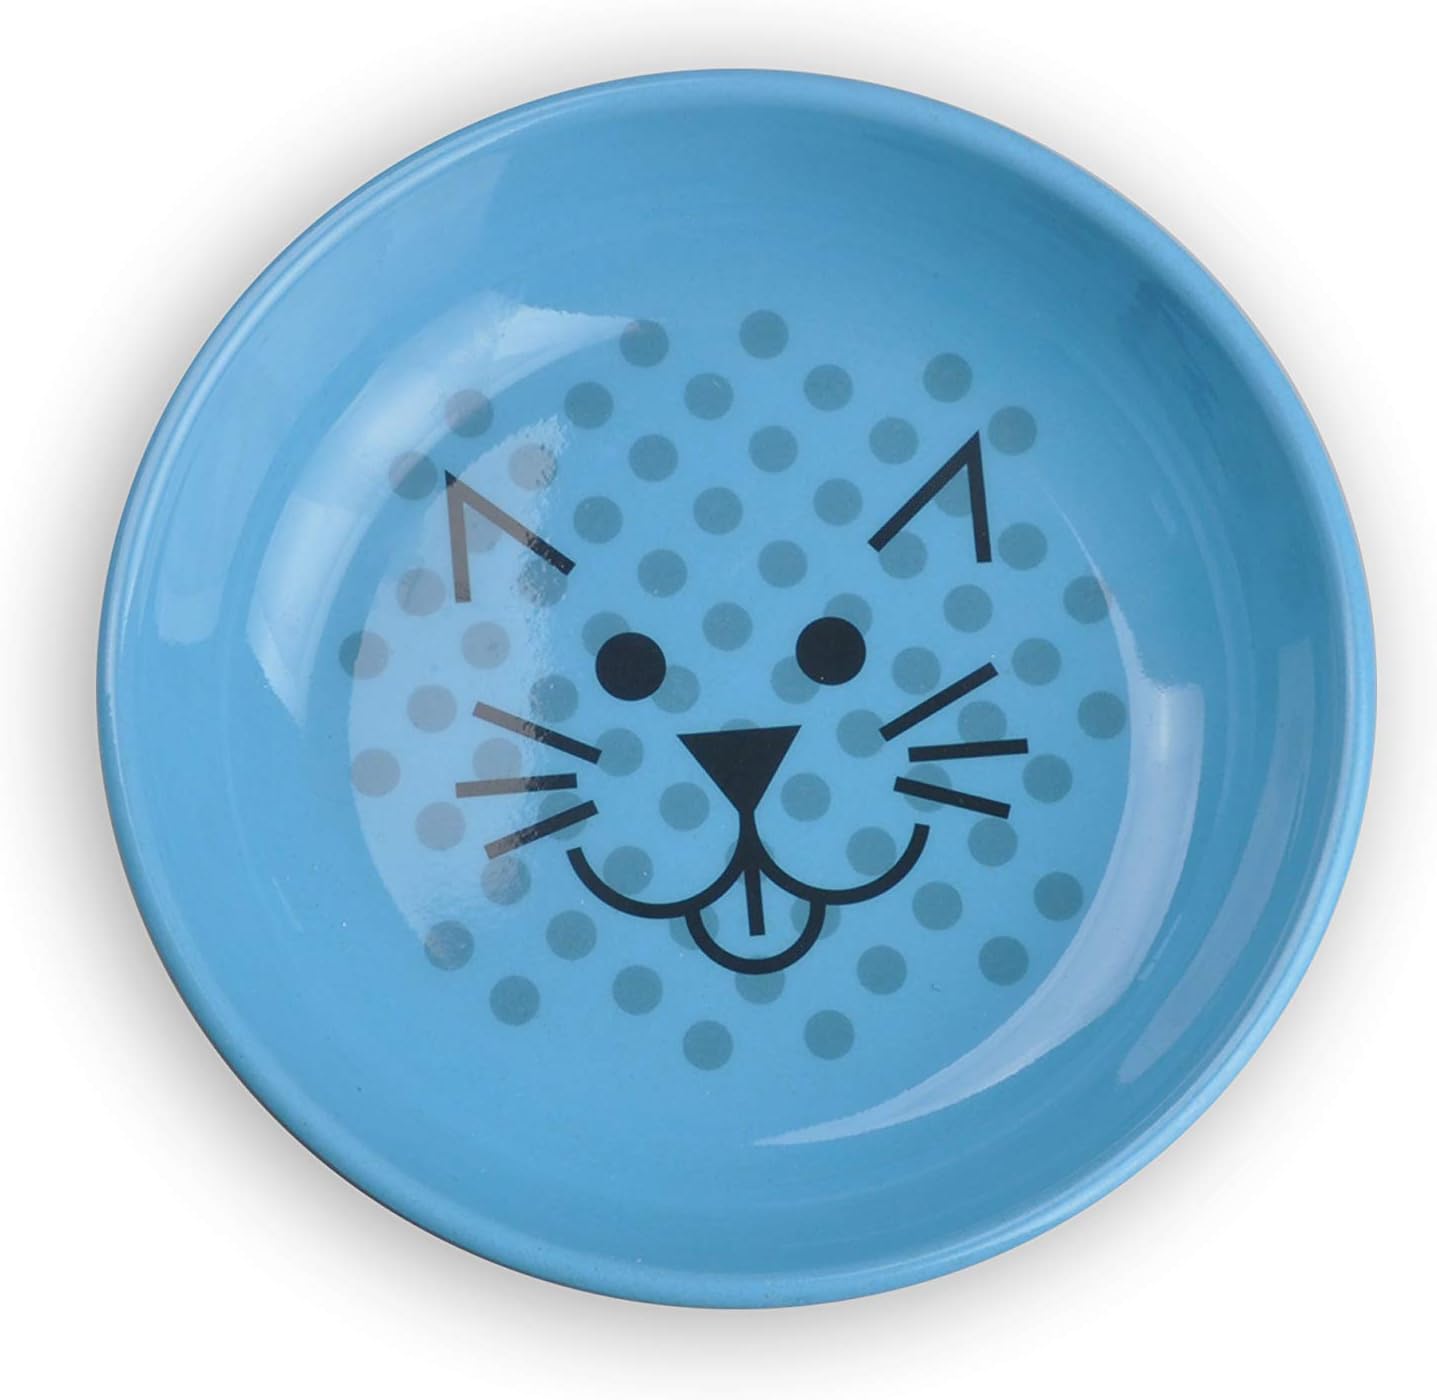 Van Ness Ecoware Whisker-Friendly Cat Bowl - 8 oz, Blue